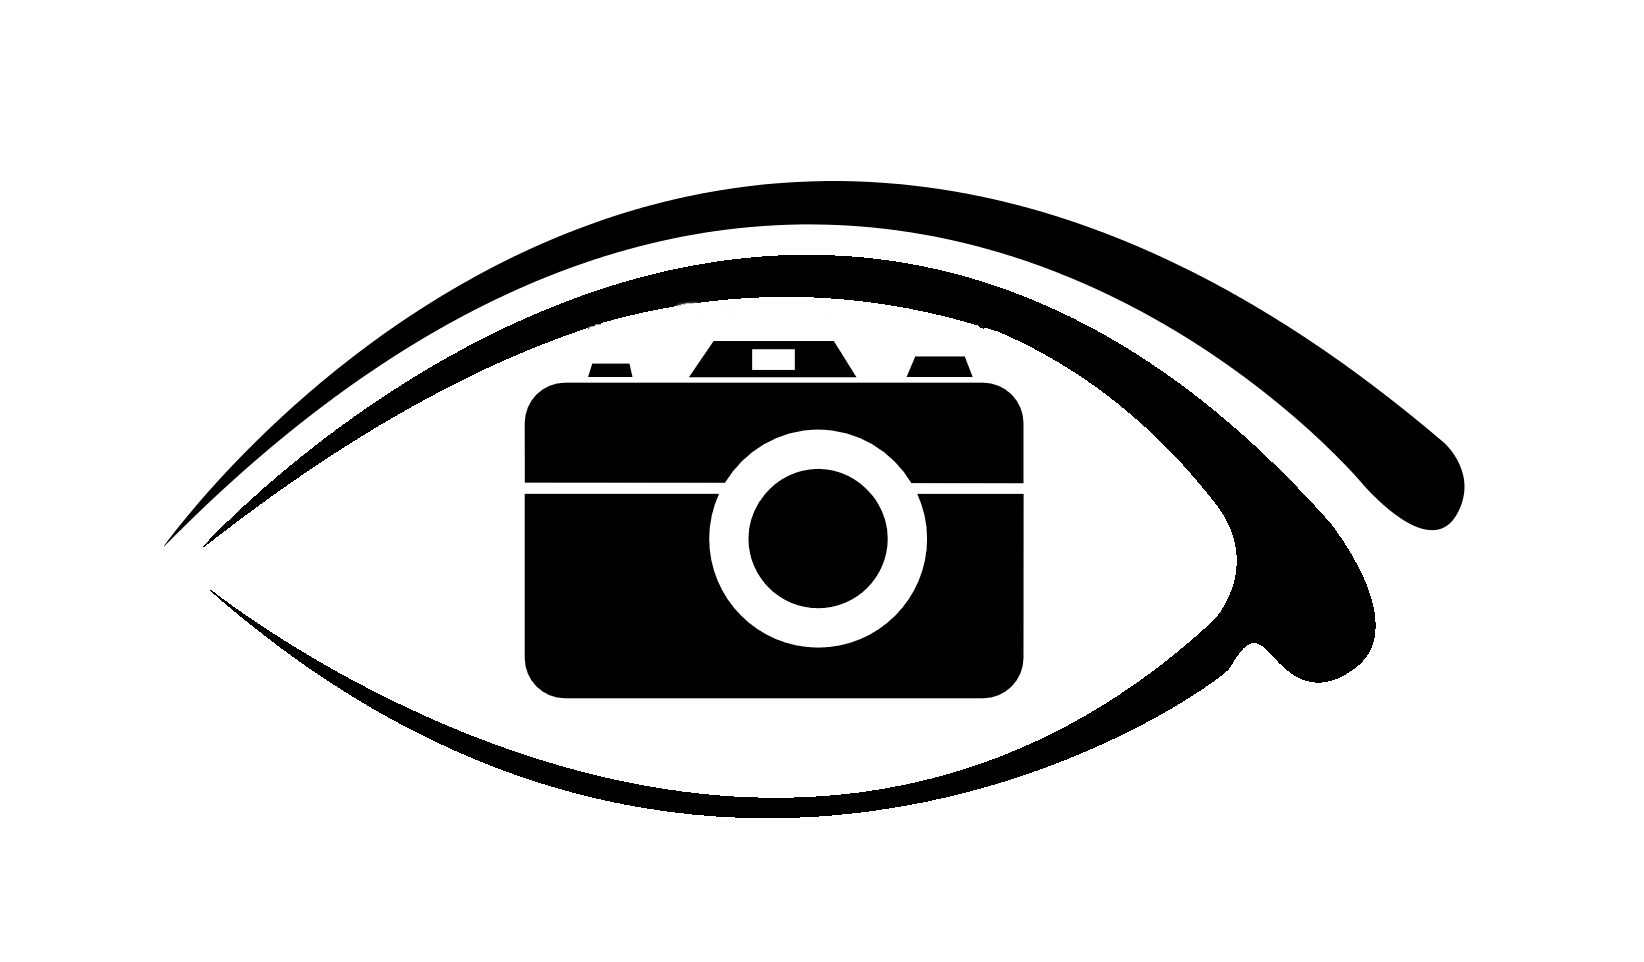 Photo Camera Logo PNG HD Images - Photo Camera Png